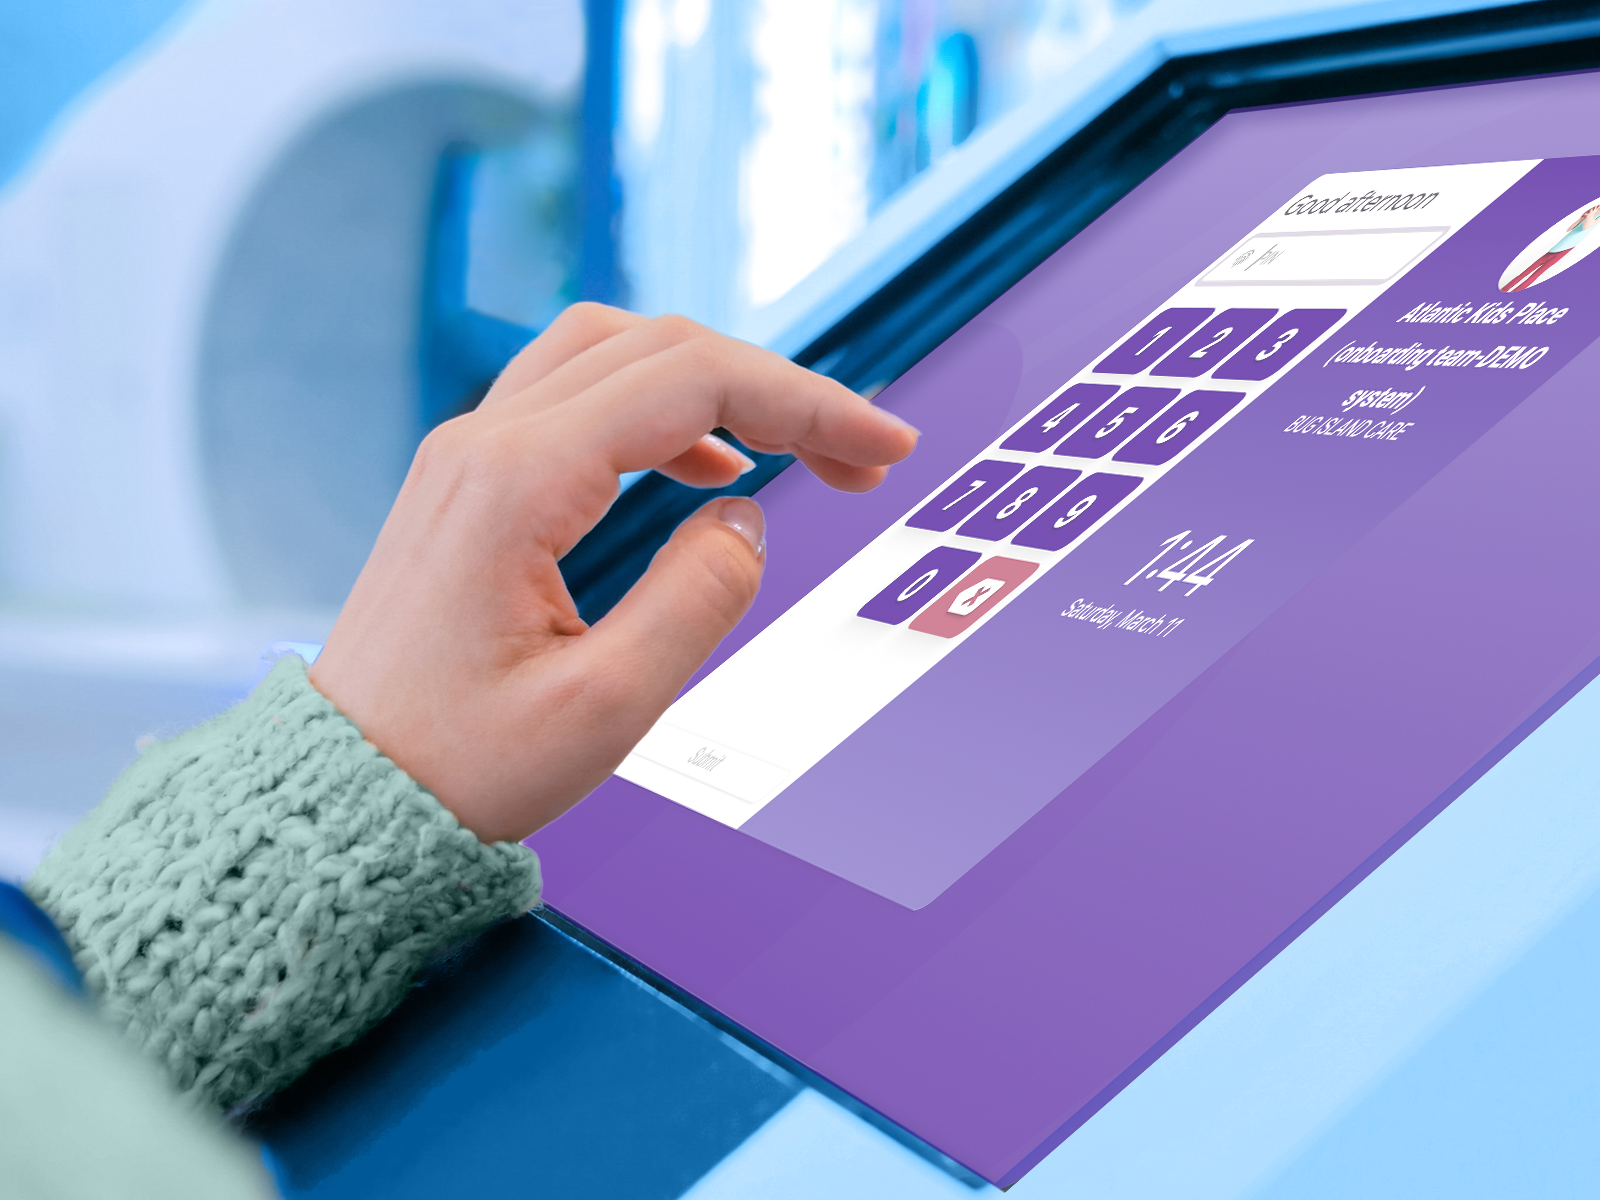 Jackrabbit Care check-in kiosk on purple screen